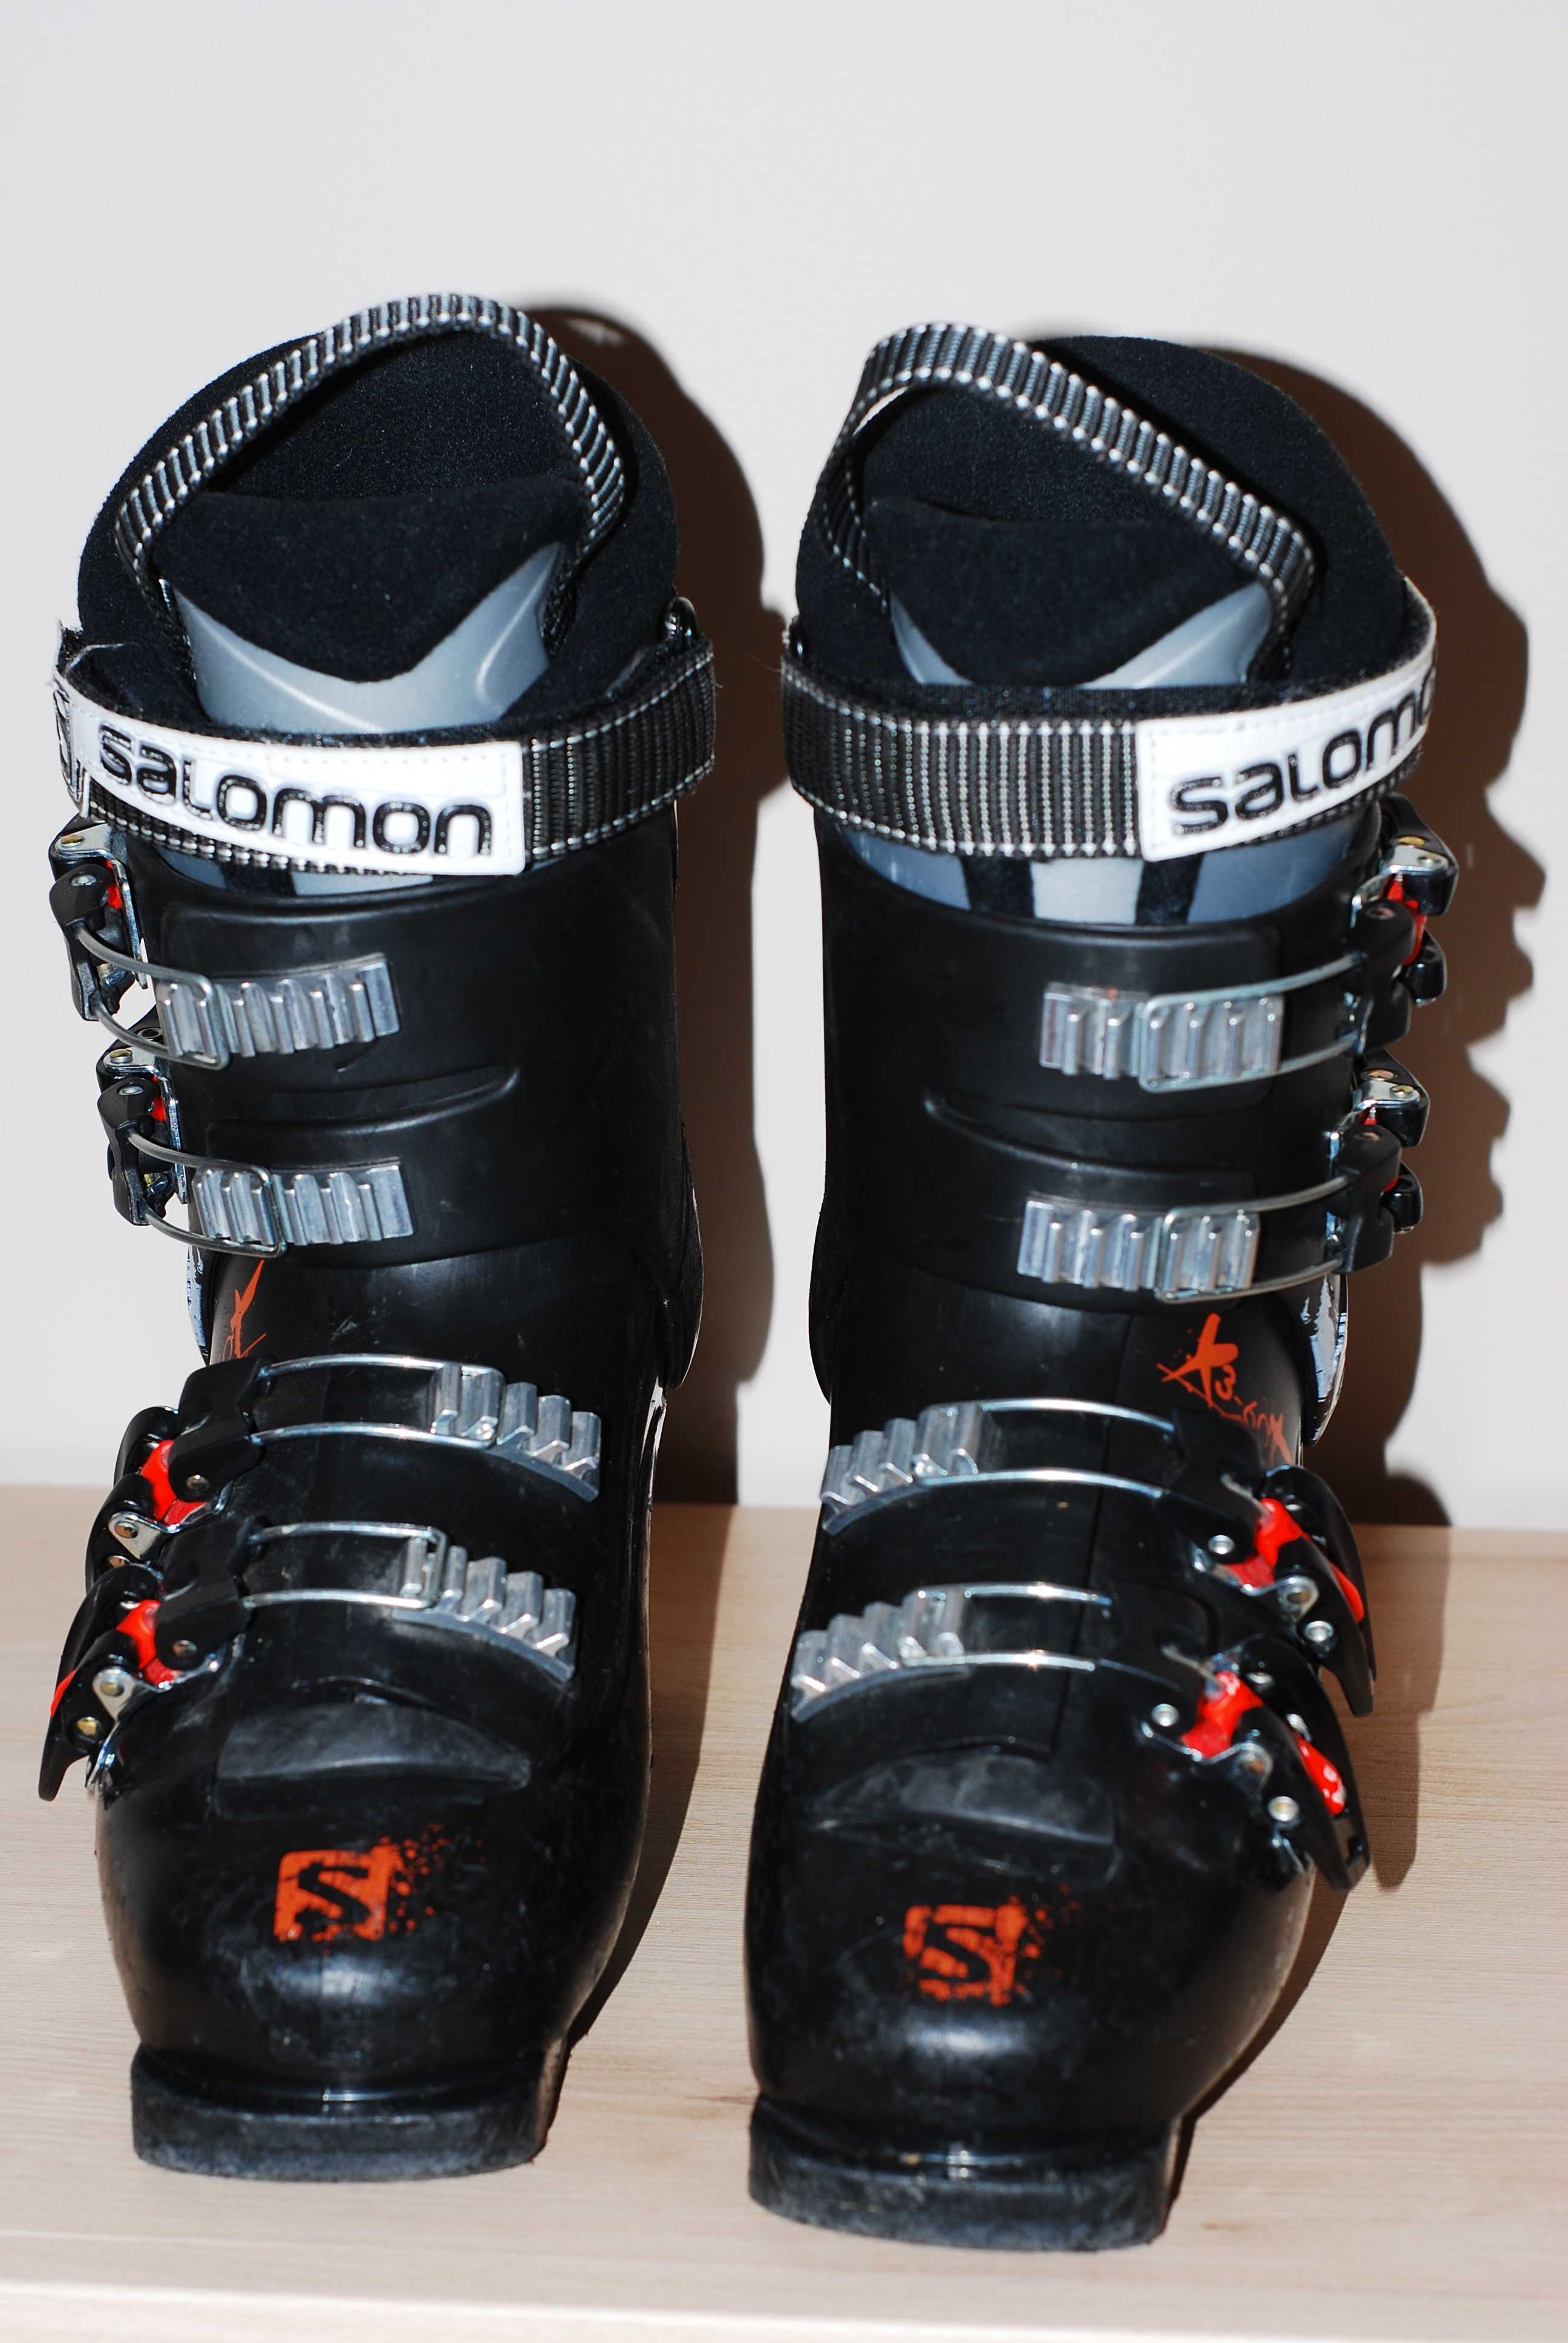 Juniorskie buty narciarskie SALOMON X3-60T r. 23-23.5 flex 60